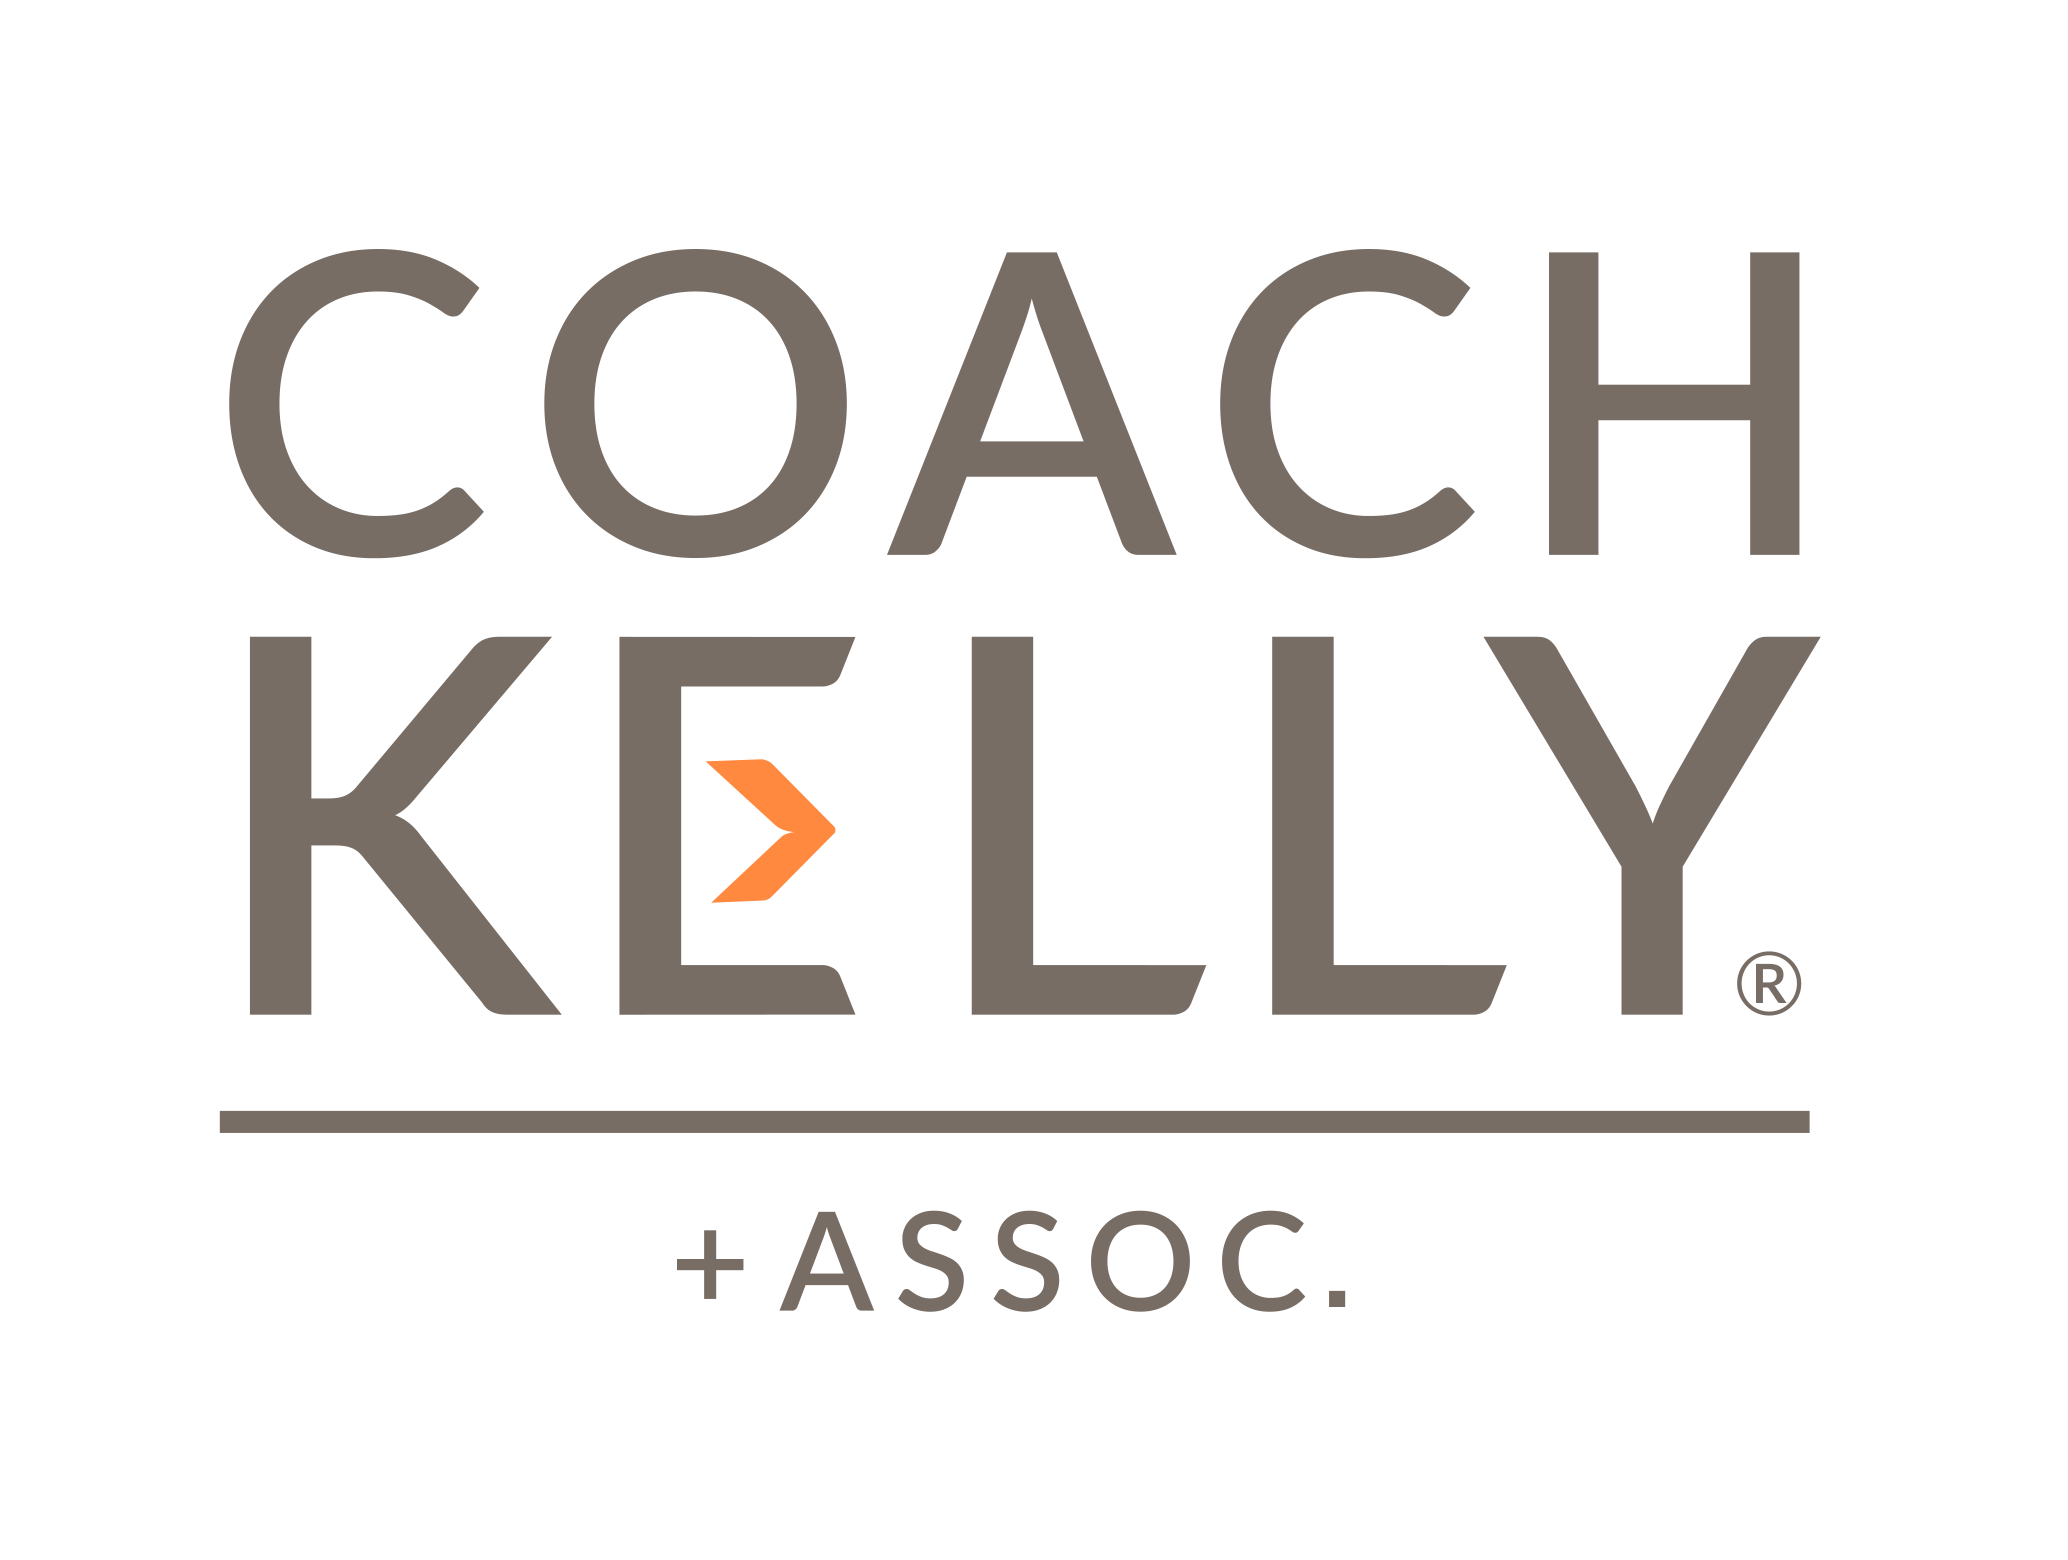 Coach Kelly & Associates